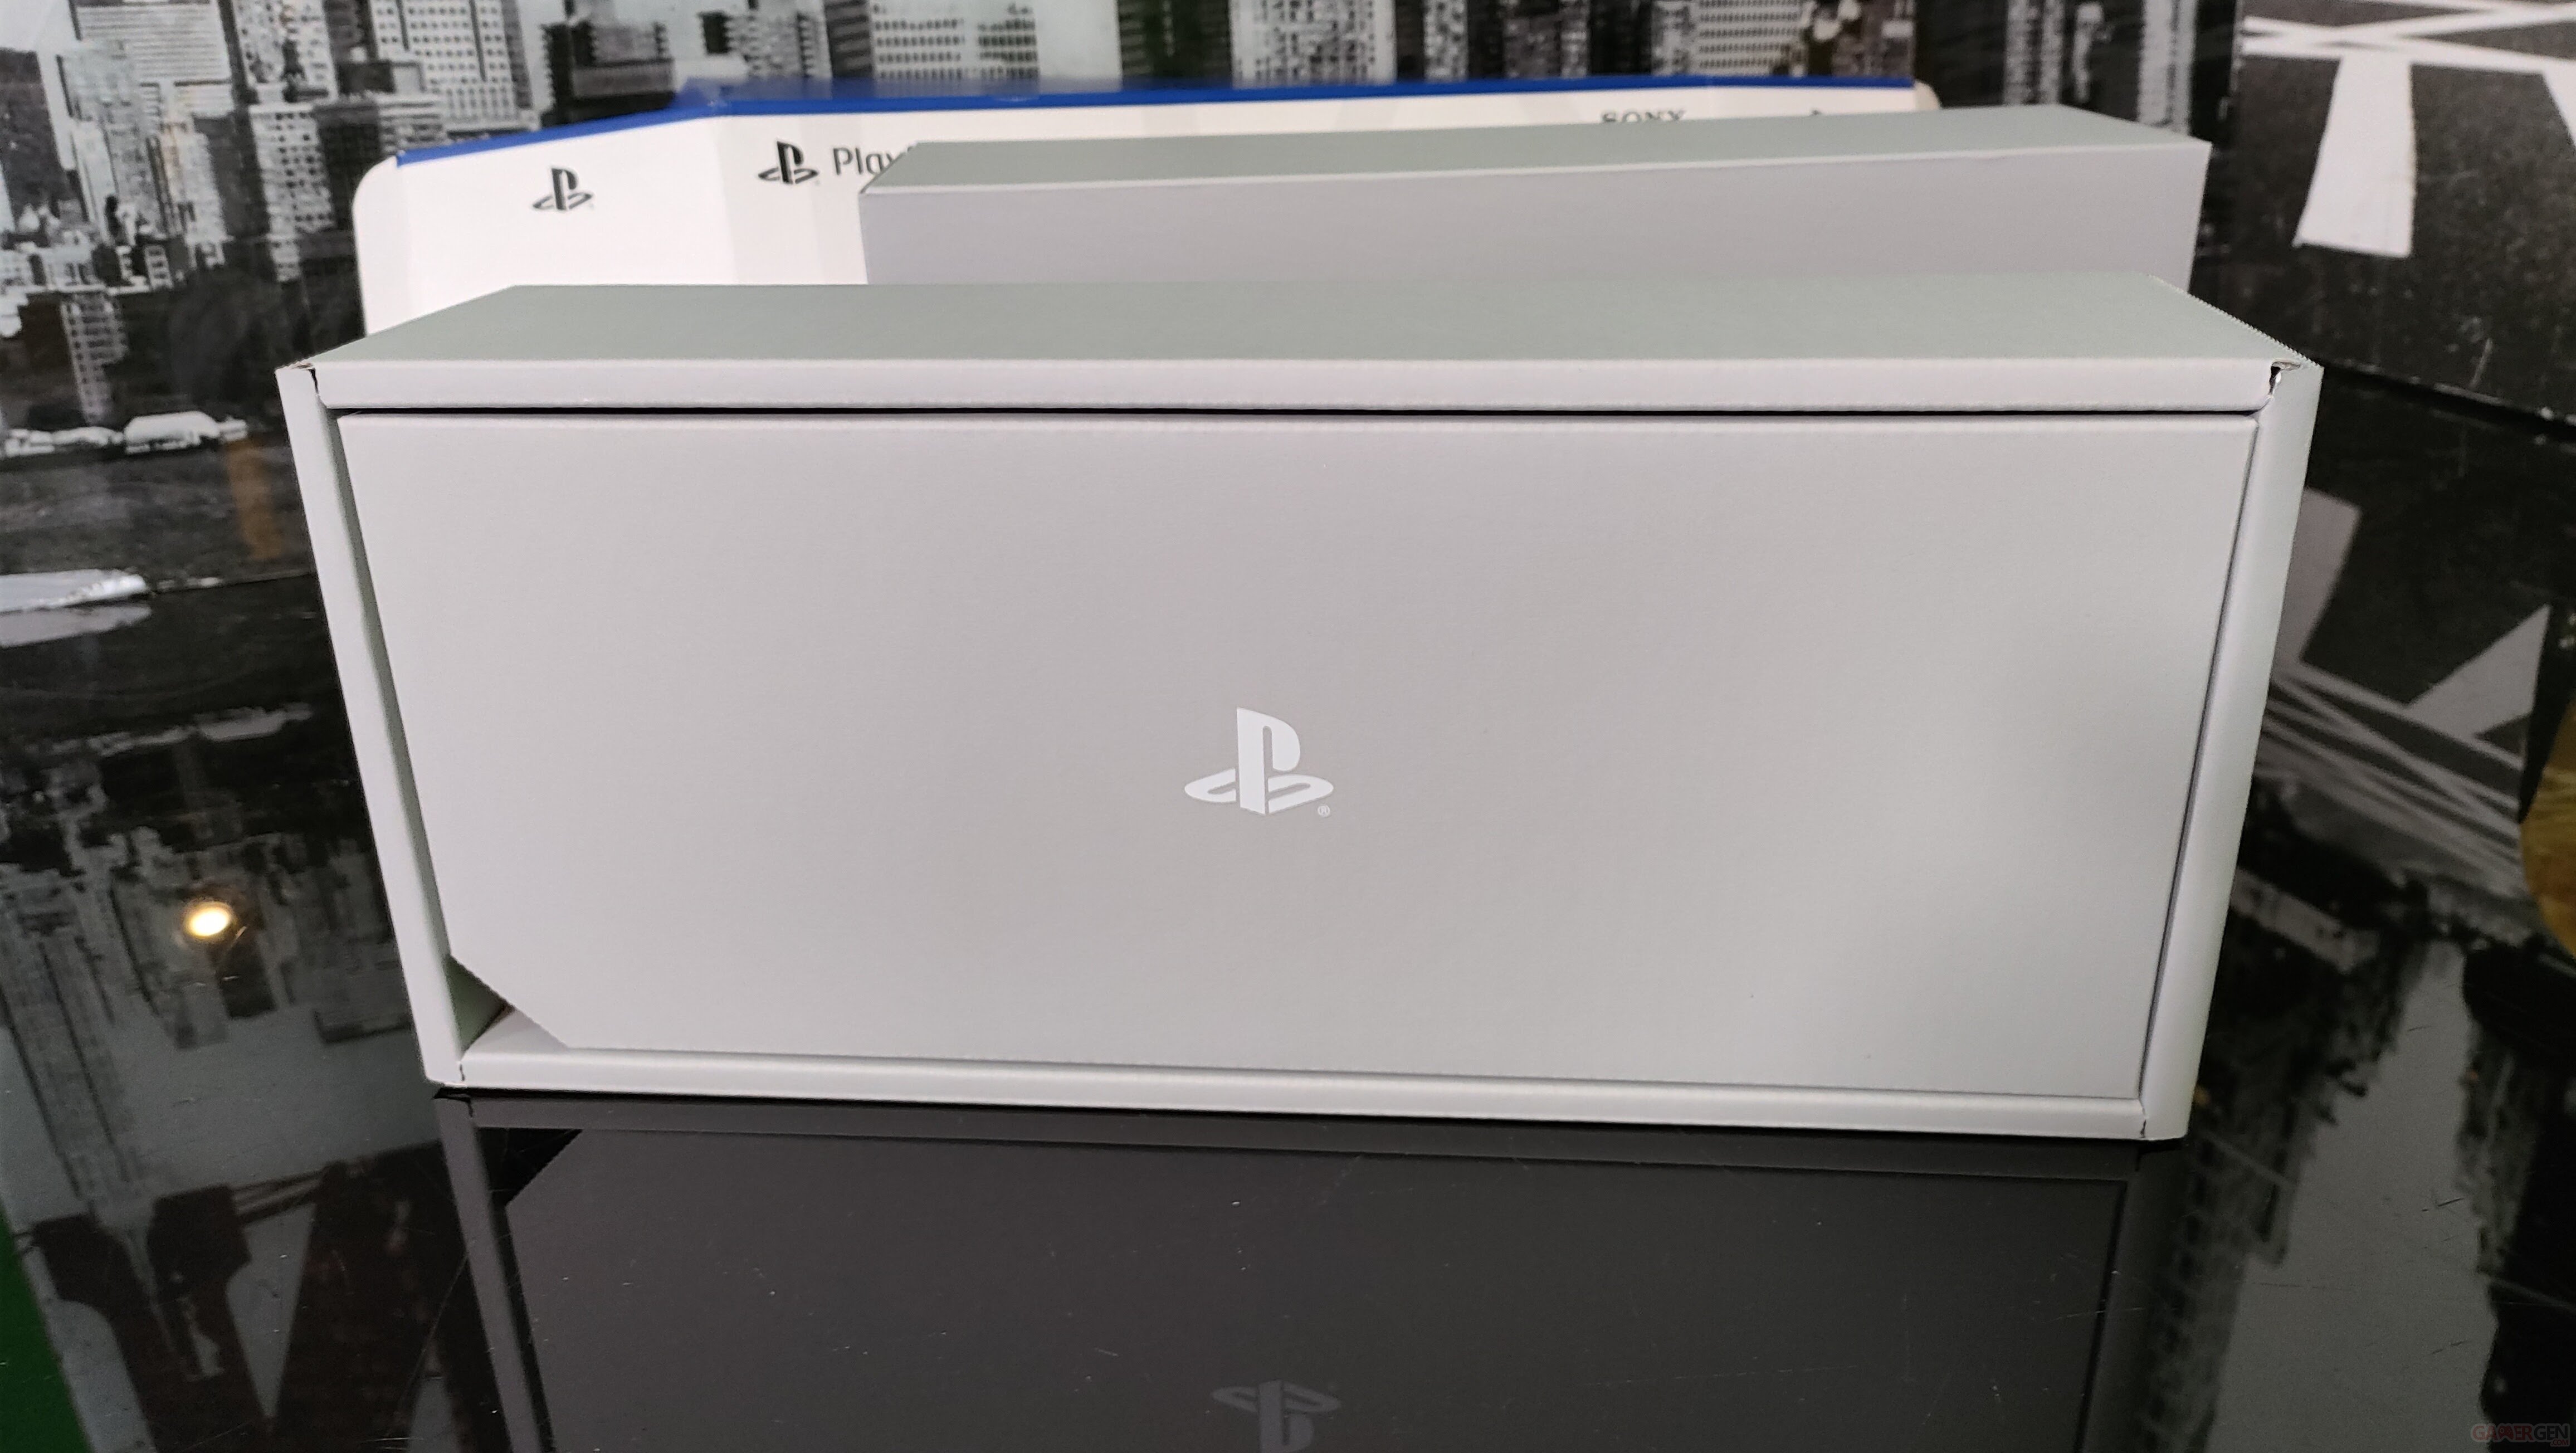 UNBOXING PlayStation Portal : voici quelques photos la nouvelle bête de la  PS5, elle est craquante… 